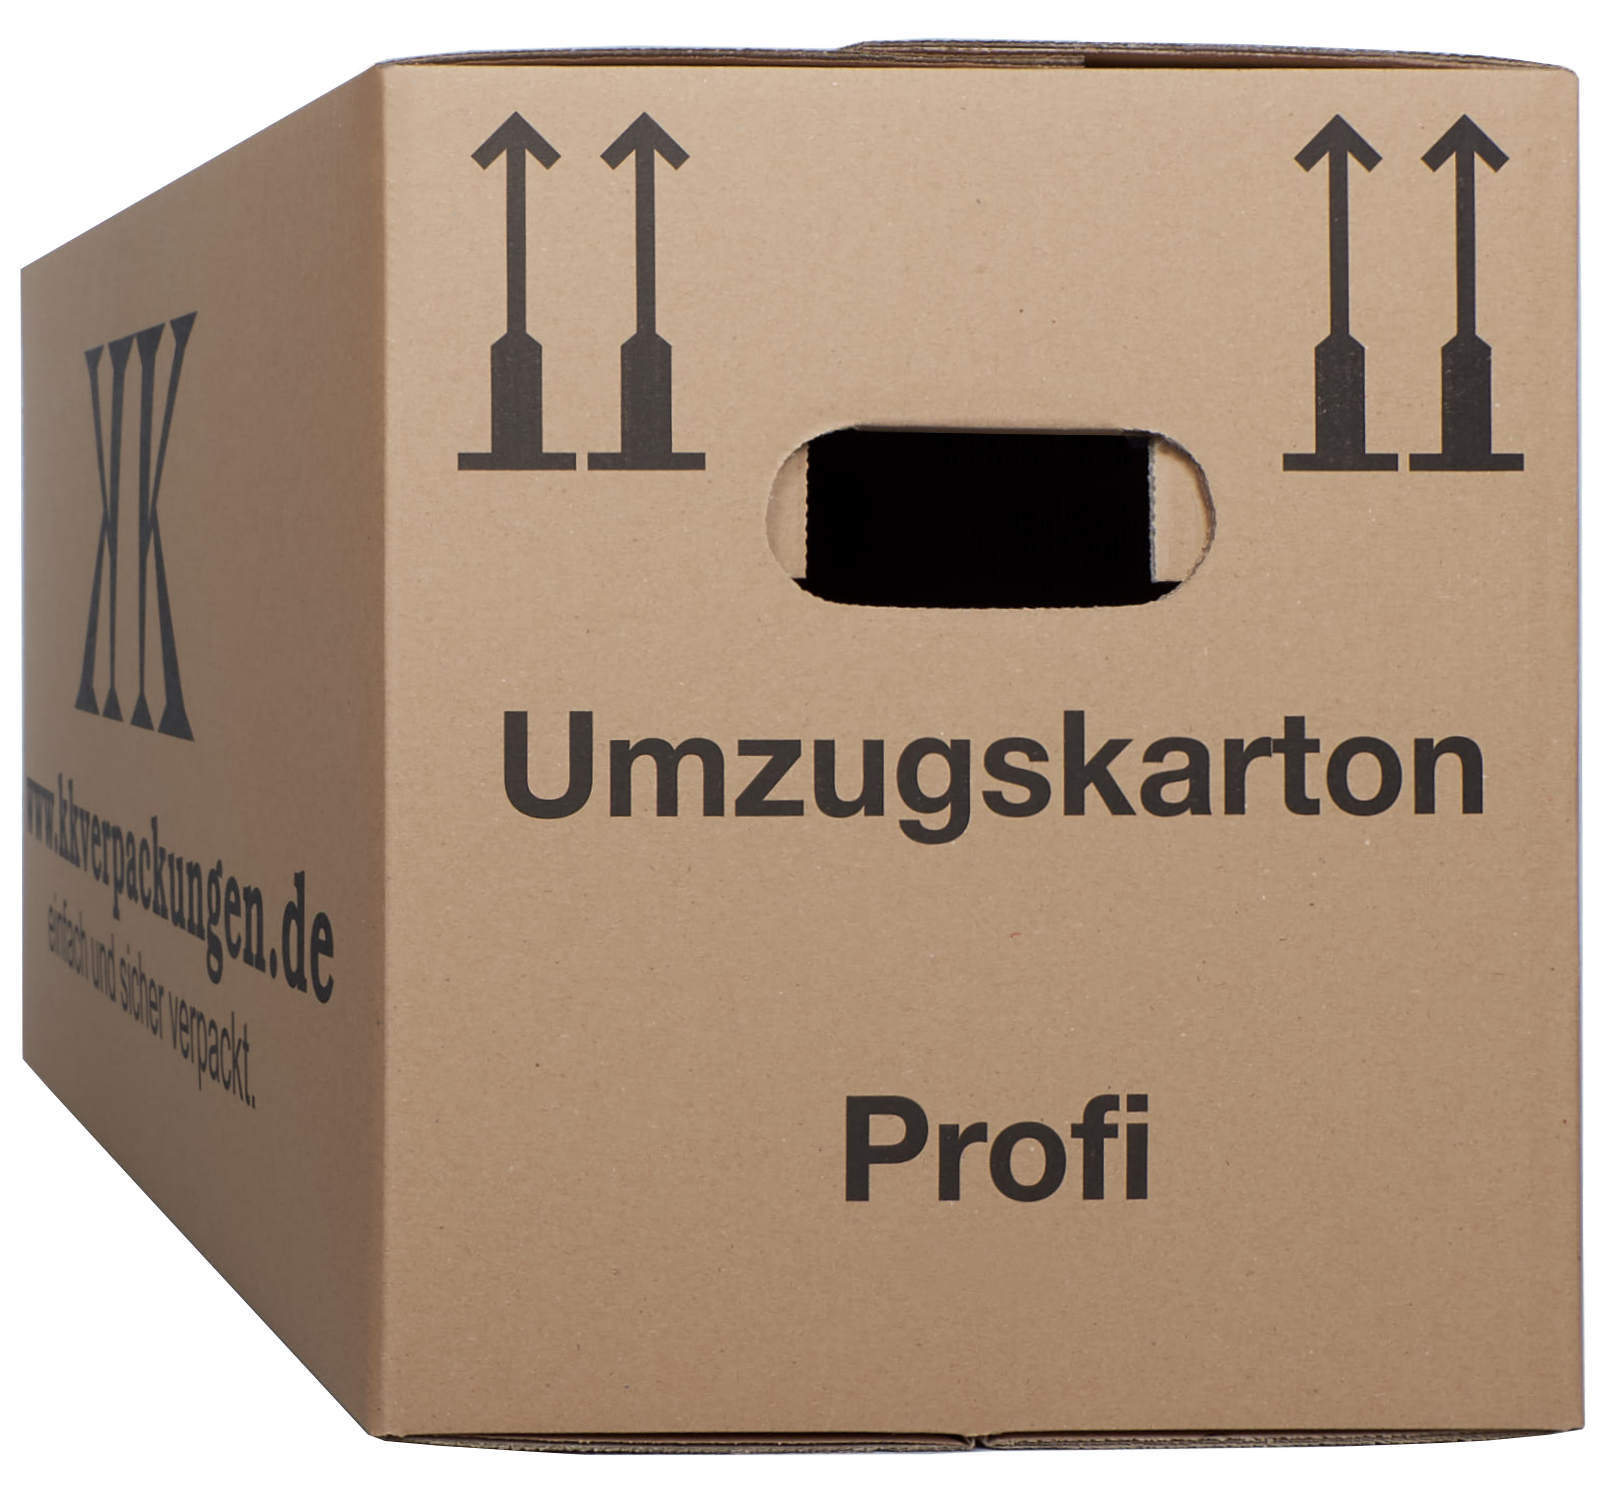 Umzugskartons Umzug Karton 2 wellig 45kg Profi Umzugskisten Movebox Bücherkarton 